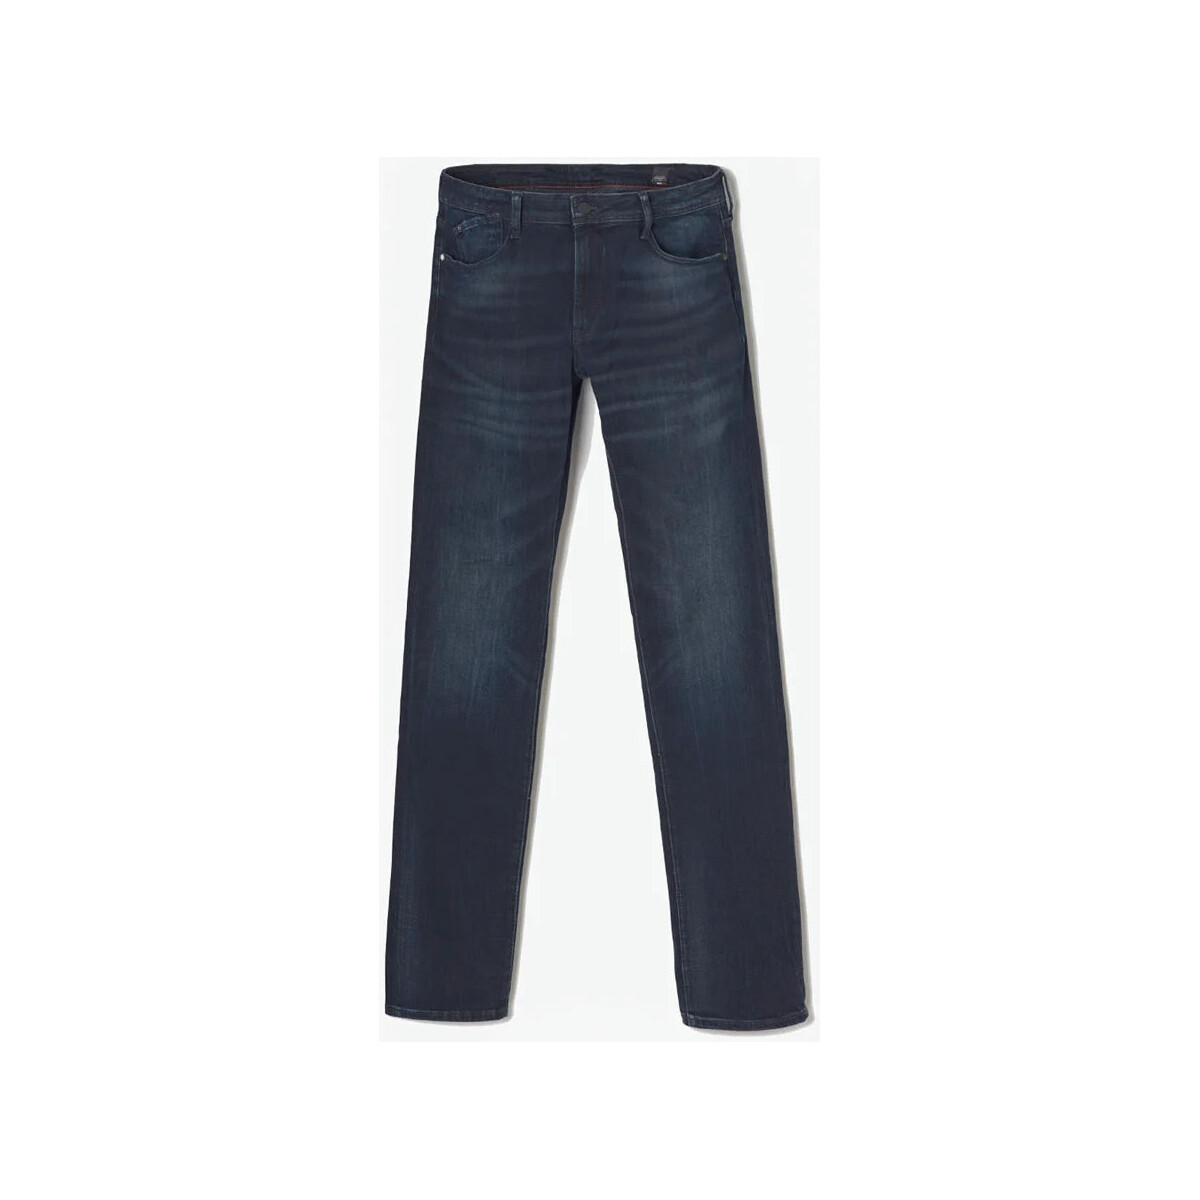 Vêtements Homme Jeans Heather Grey Reflective Shortsises Basic 800/12 regular jeans bleu-noir Bleu